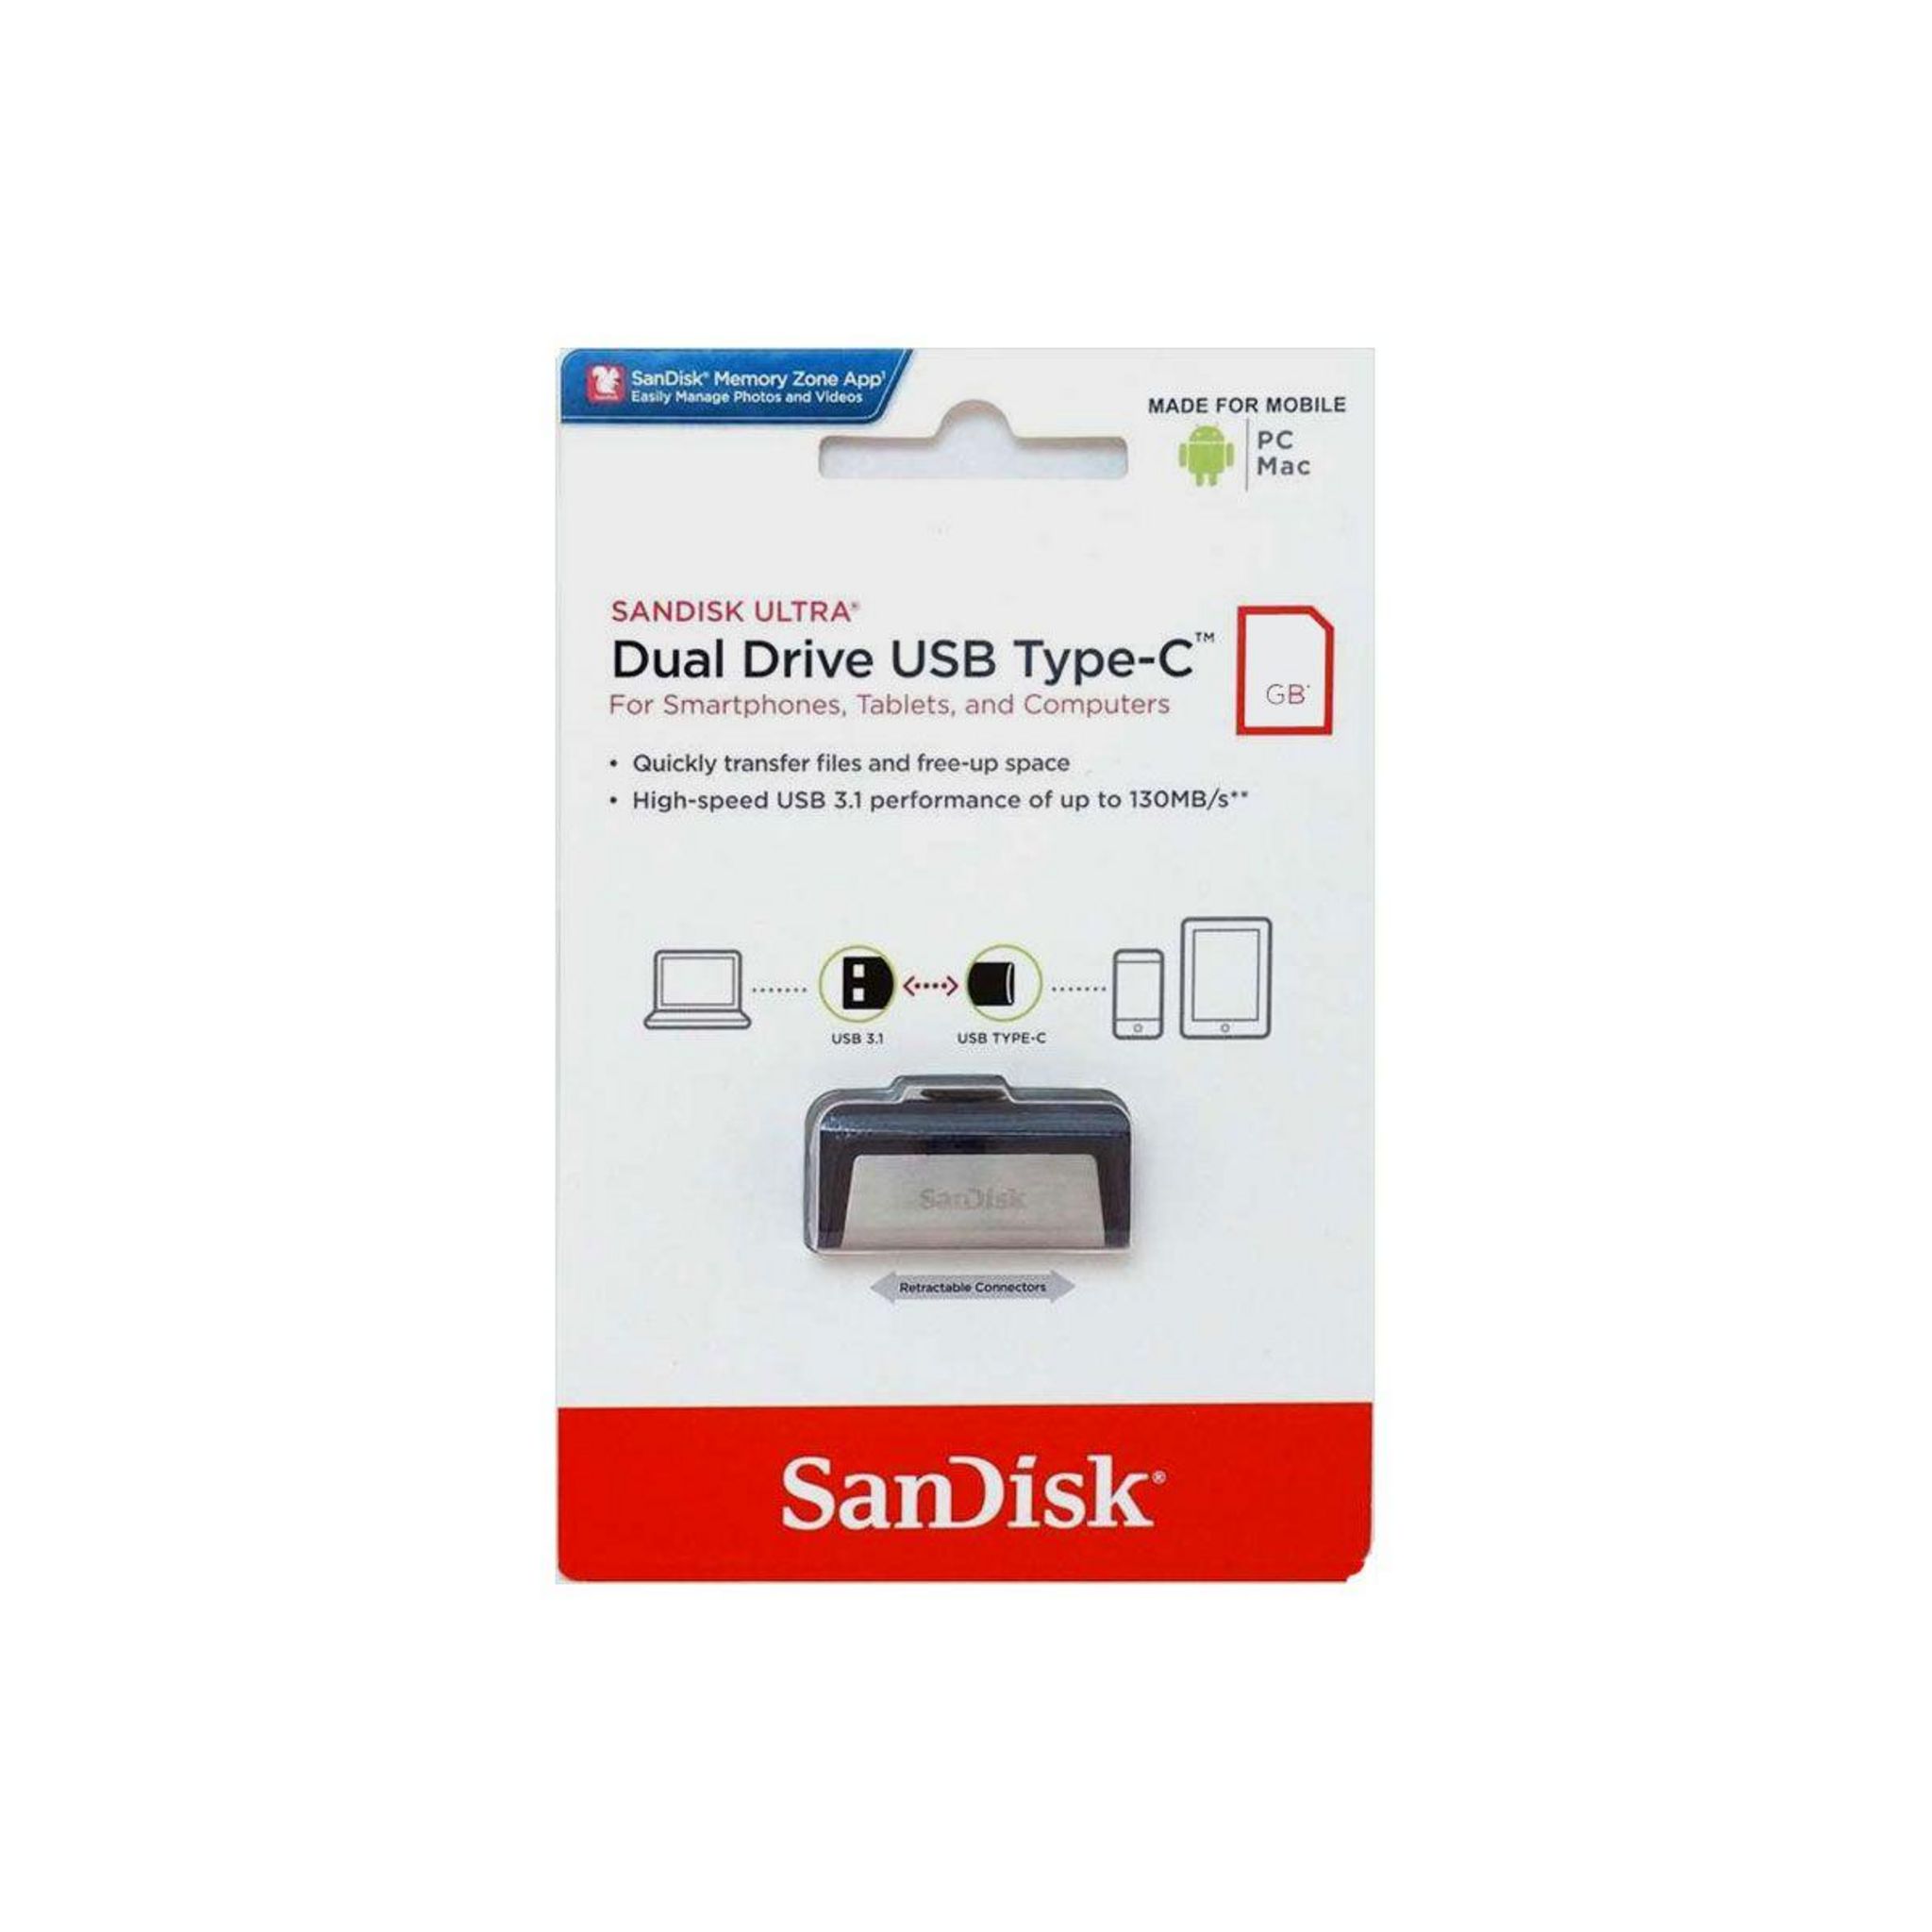 SanDisk présente une clé USB 3.1 de 4 To !